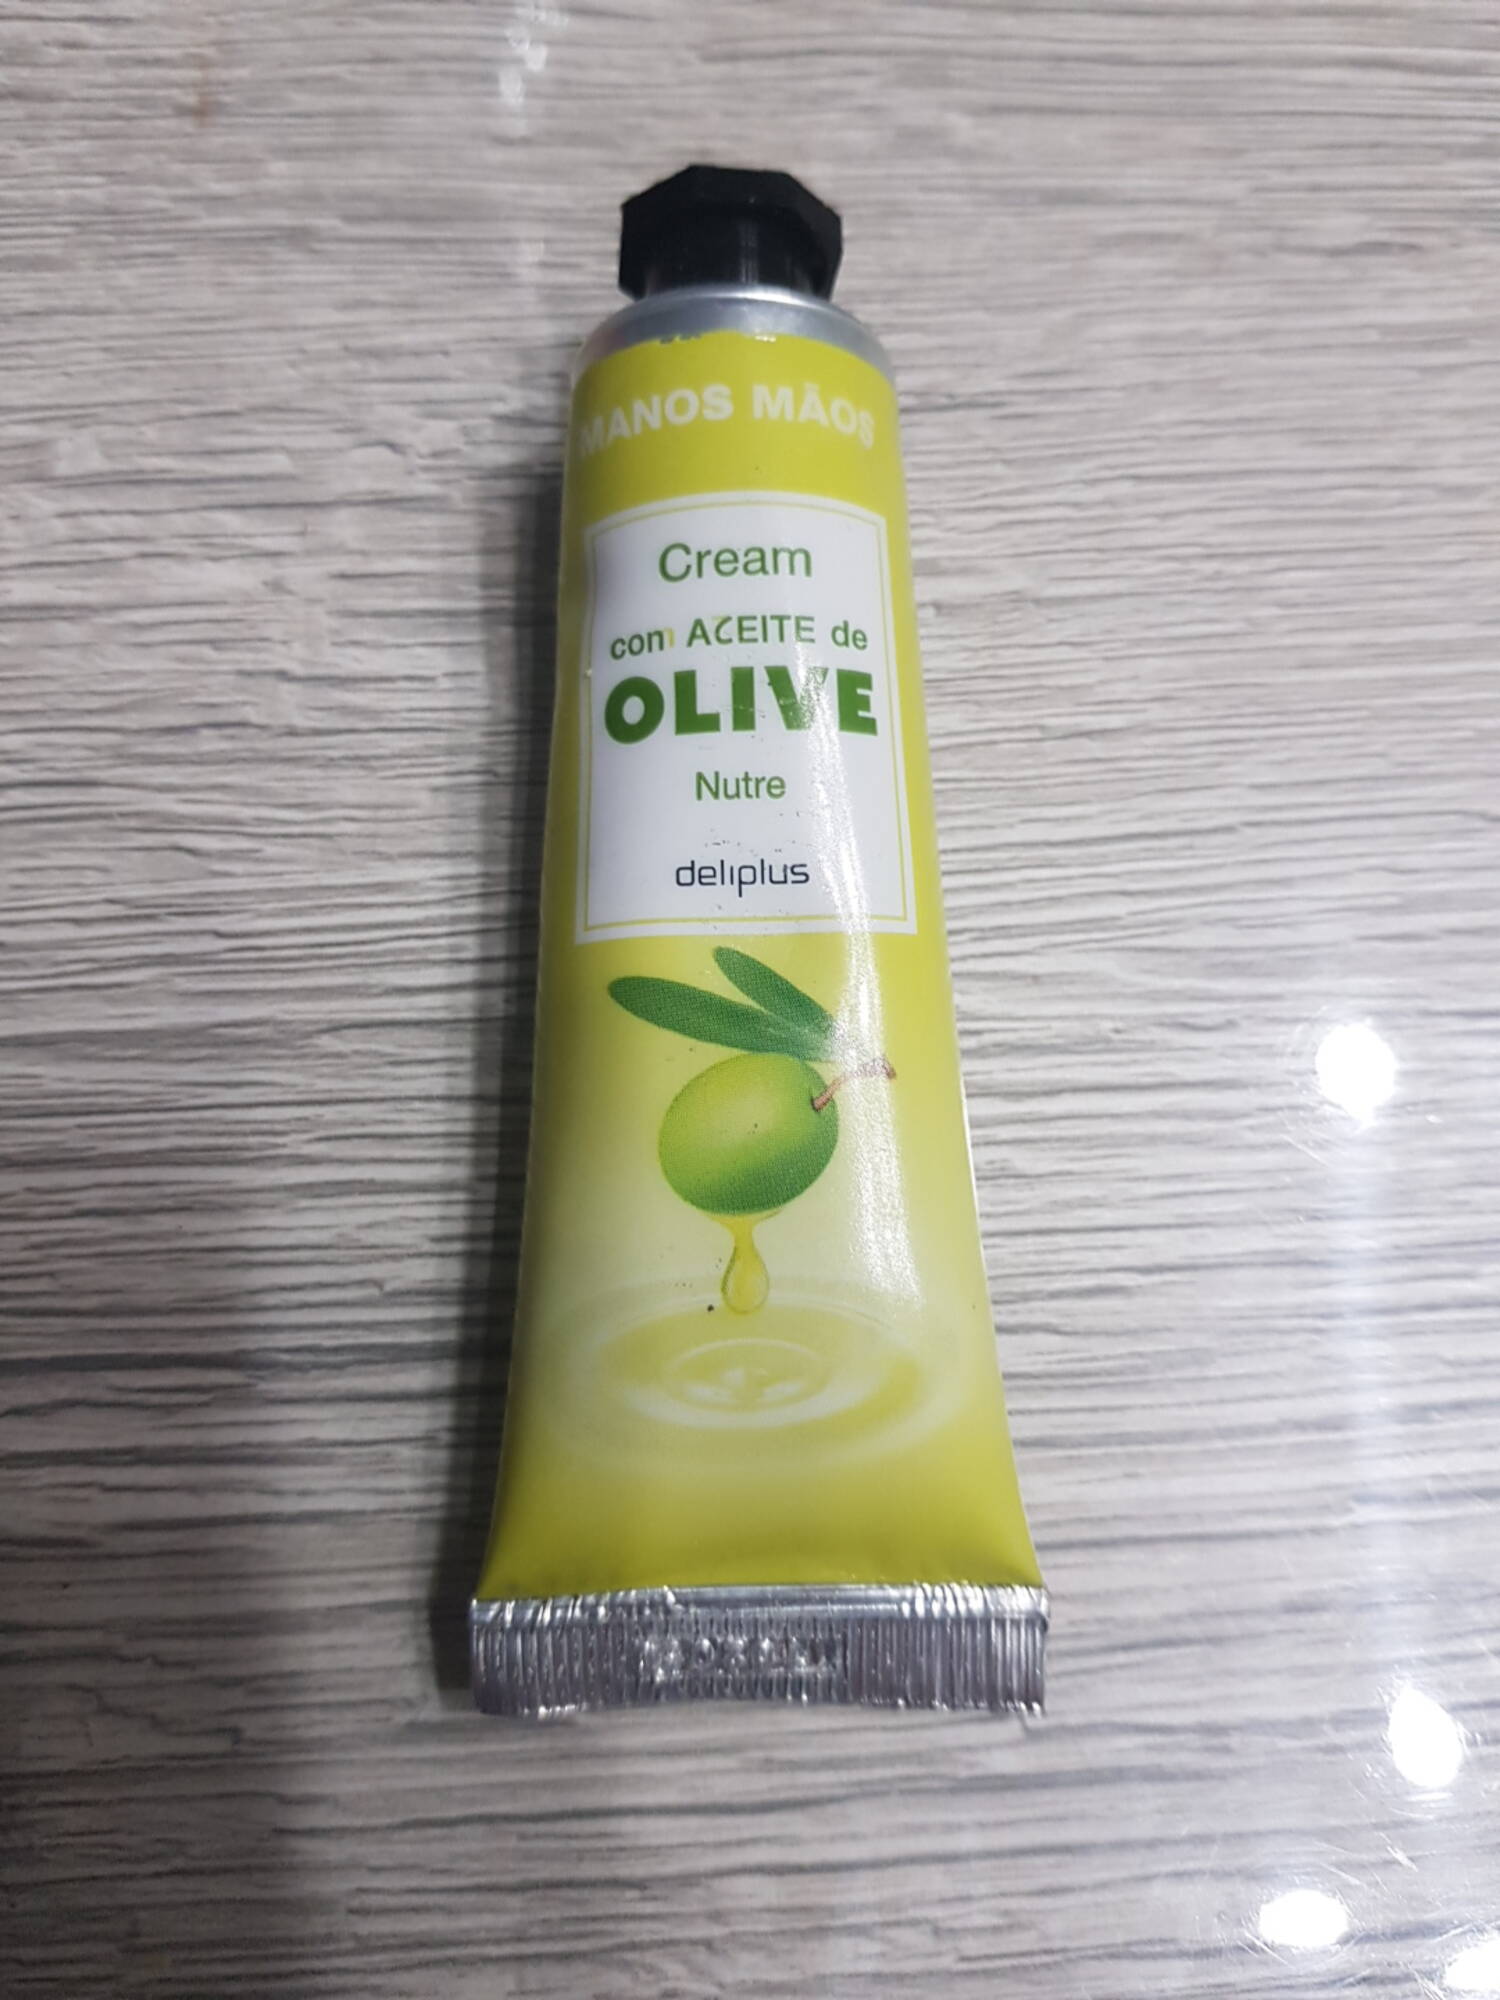 DELIPLUS - Cream com aceite de olive nature